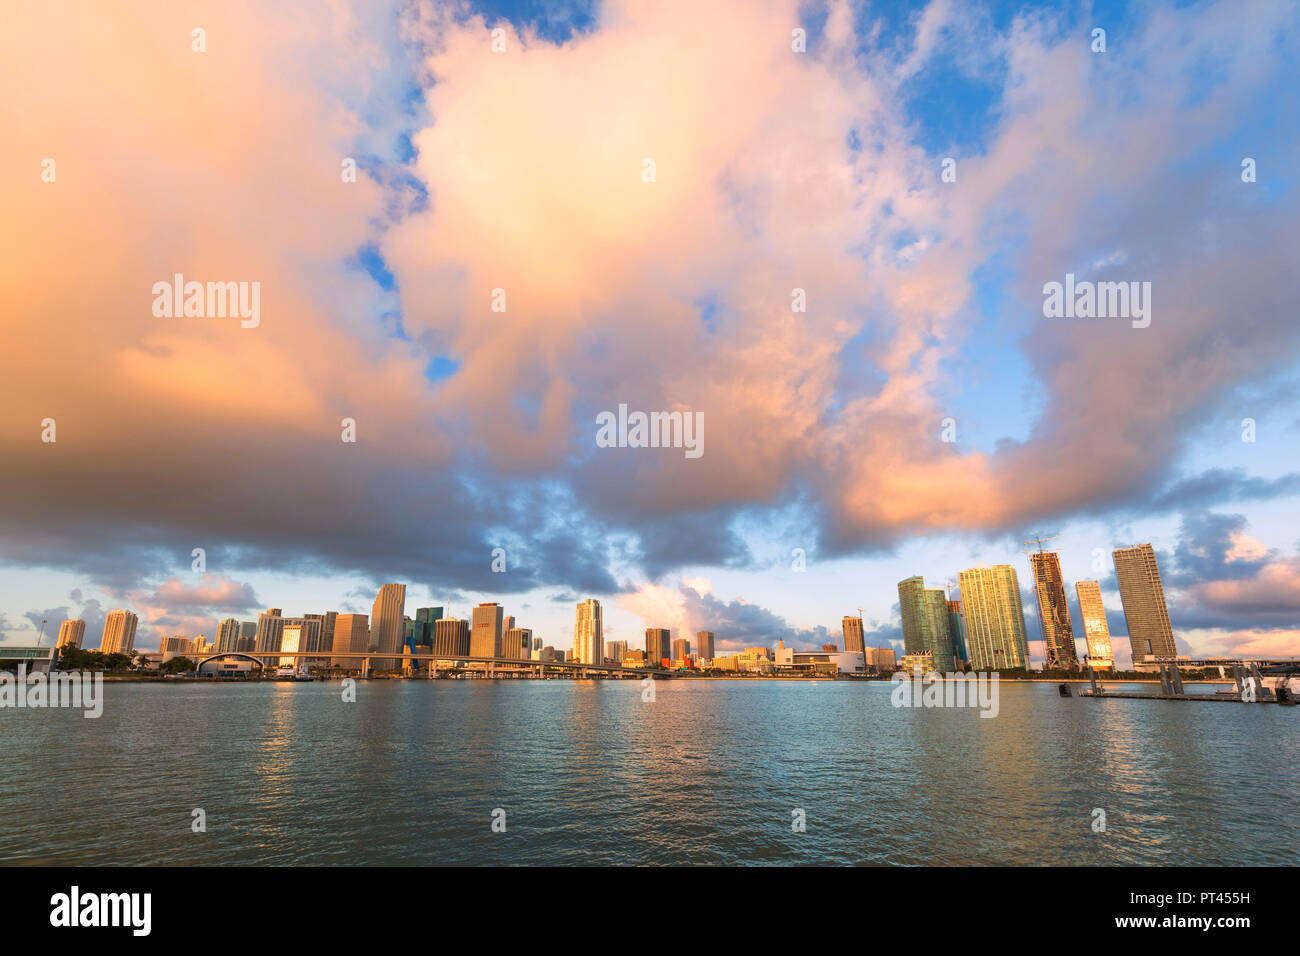 Le centre-ville de Miami Skyline de Watson Island, Miami, Floride, USA, Amérique du Nord Banque D'Images